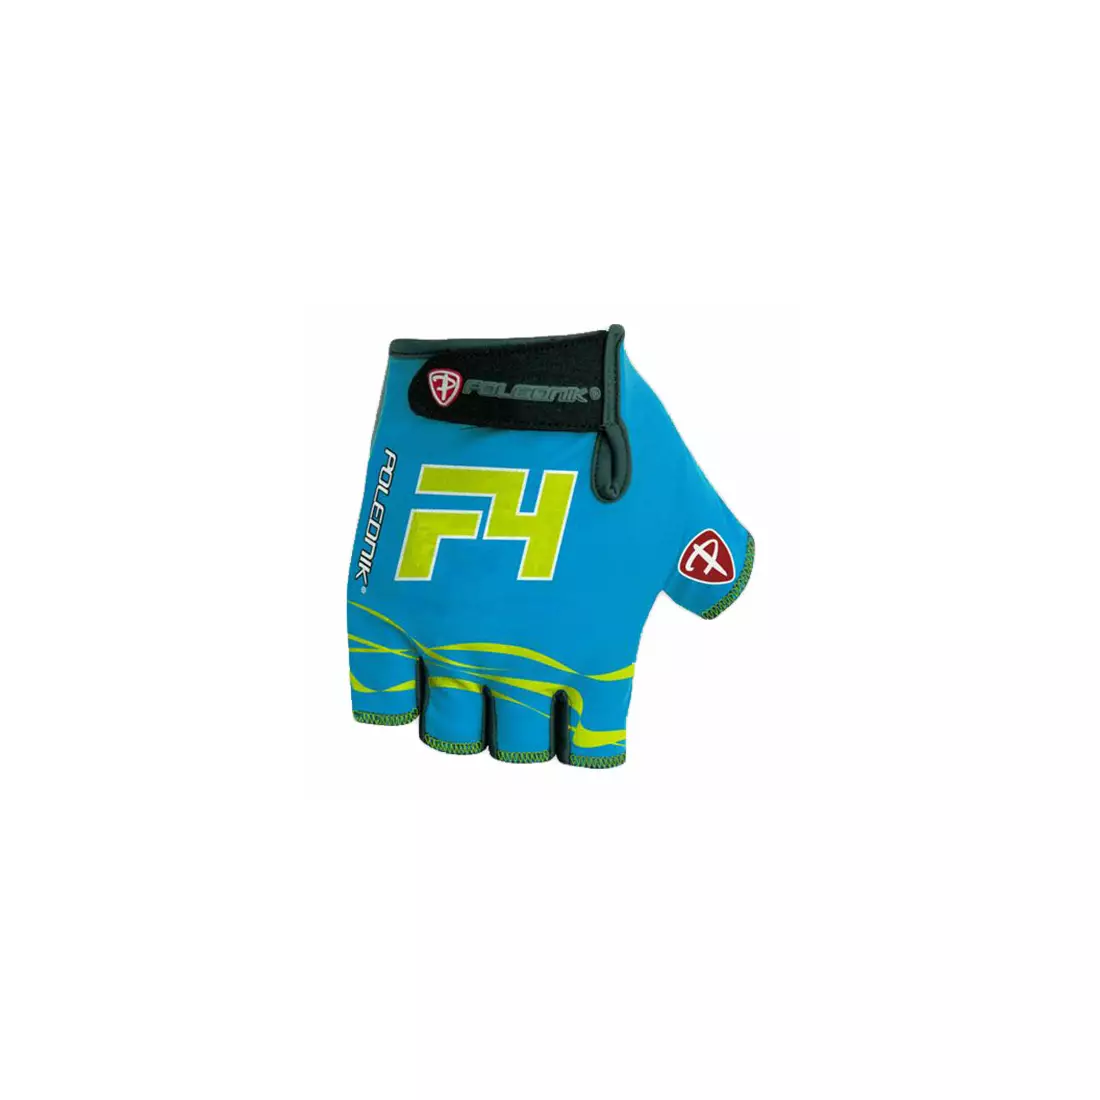 POLEDNIK gloves F4 NEW15, color: blue